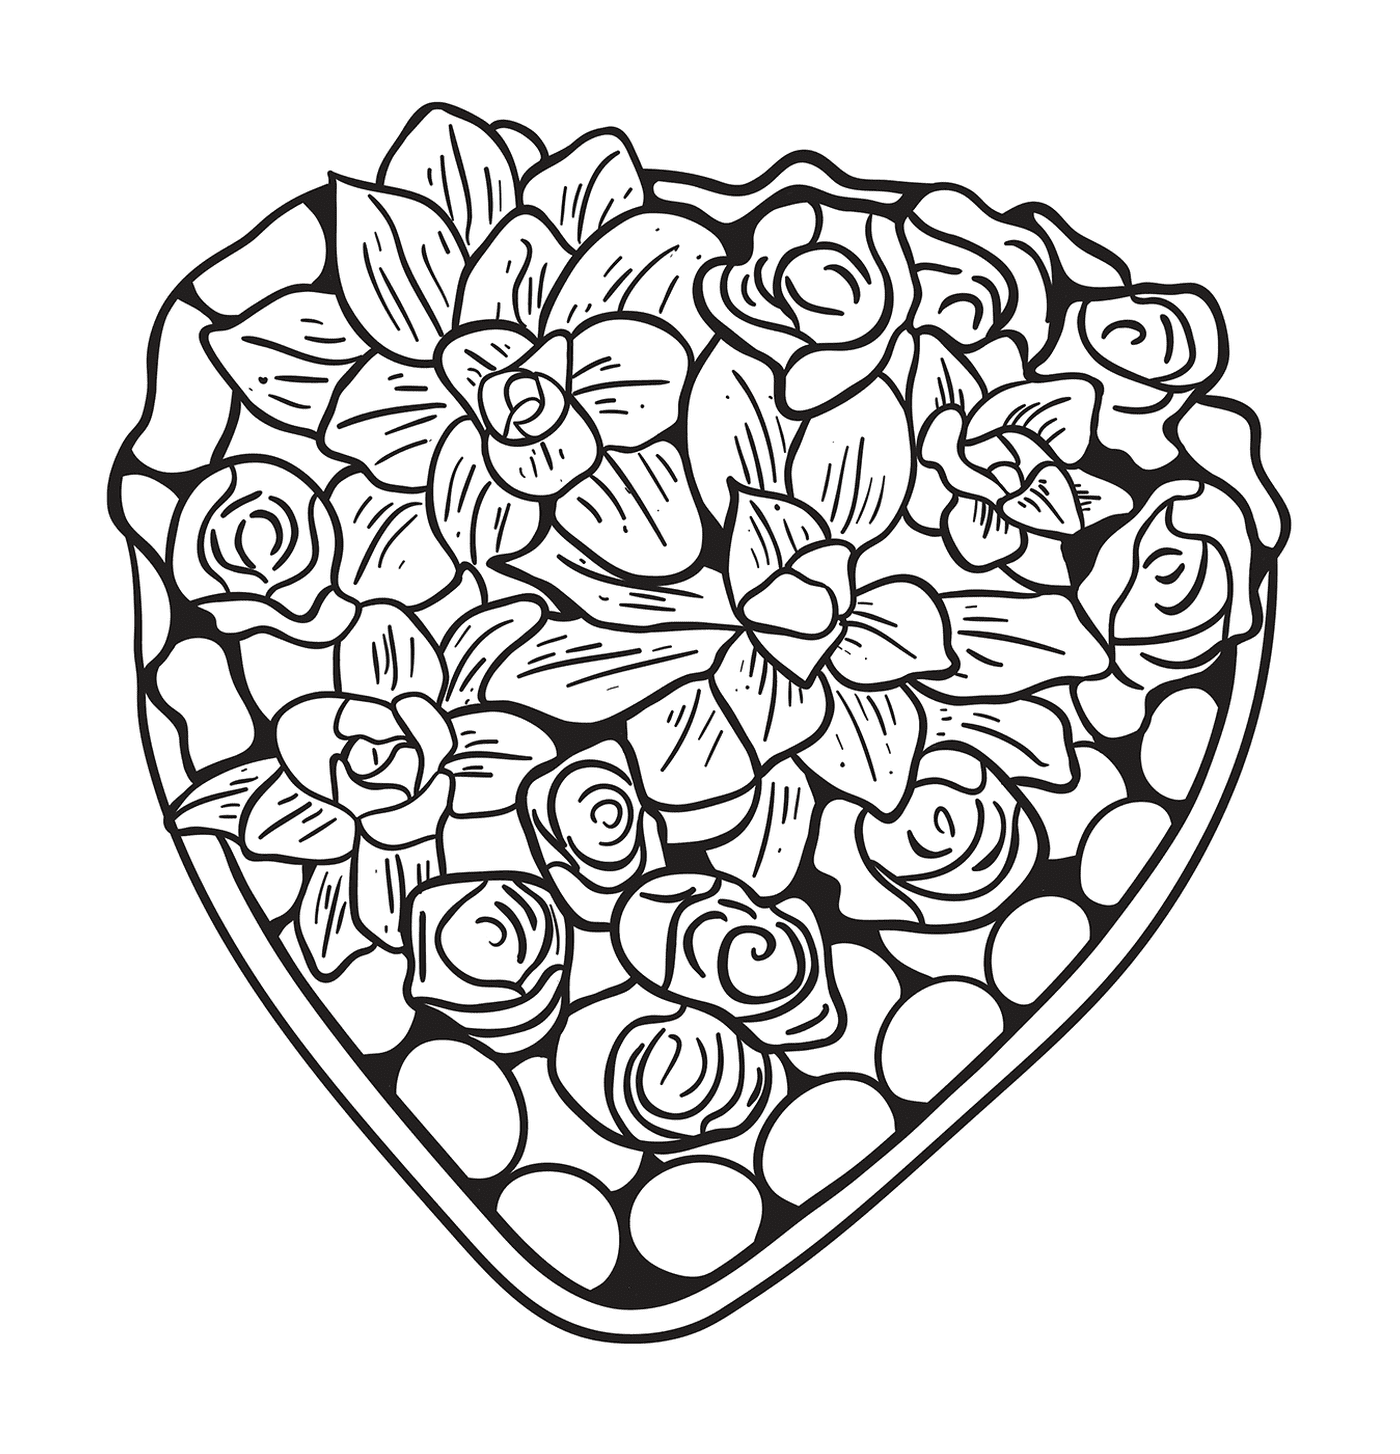  Schönes Herz aus Blumen und Rosen 